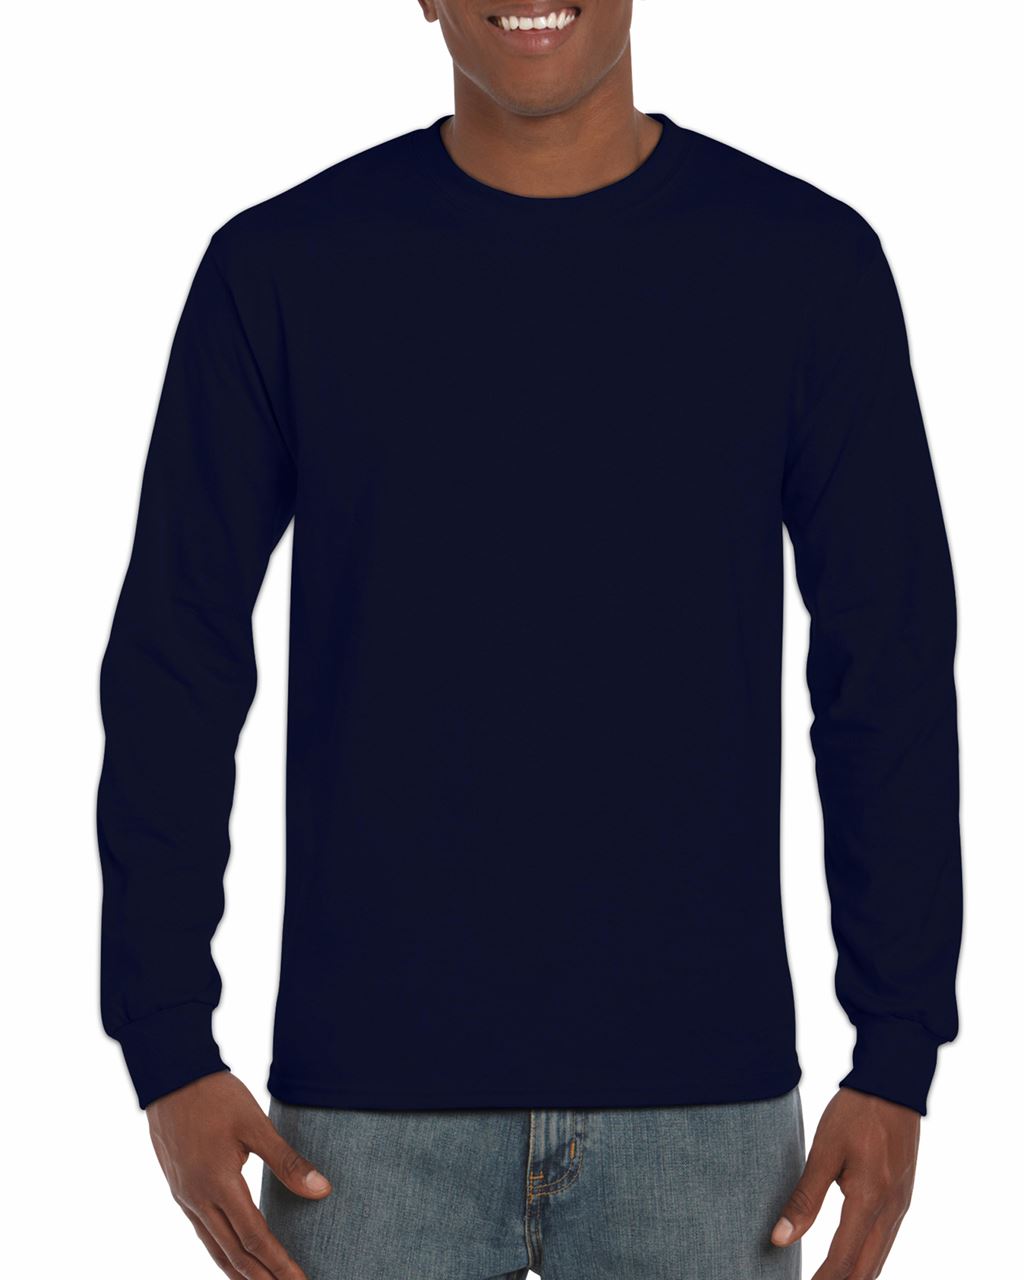 Gildan Ultra Cotton™ Adult Long Sleeve T-shirt - blue